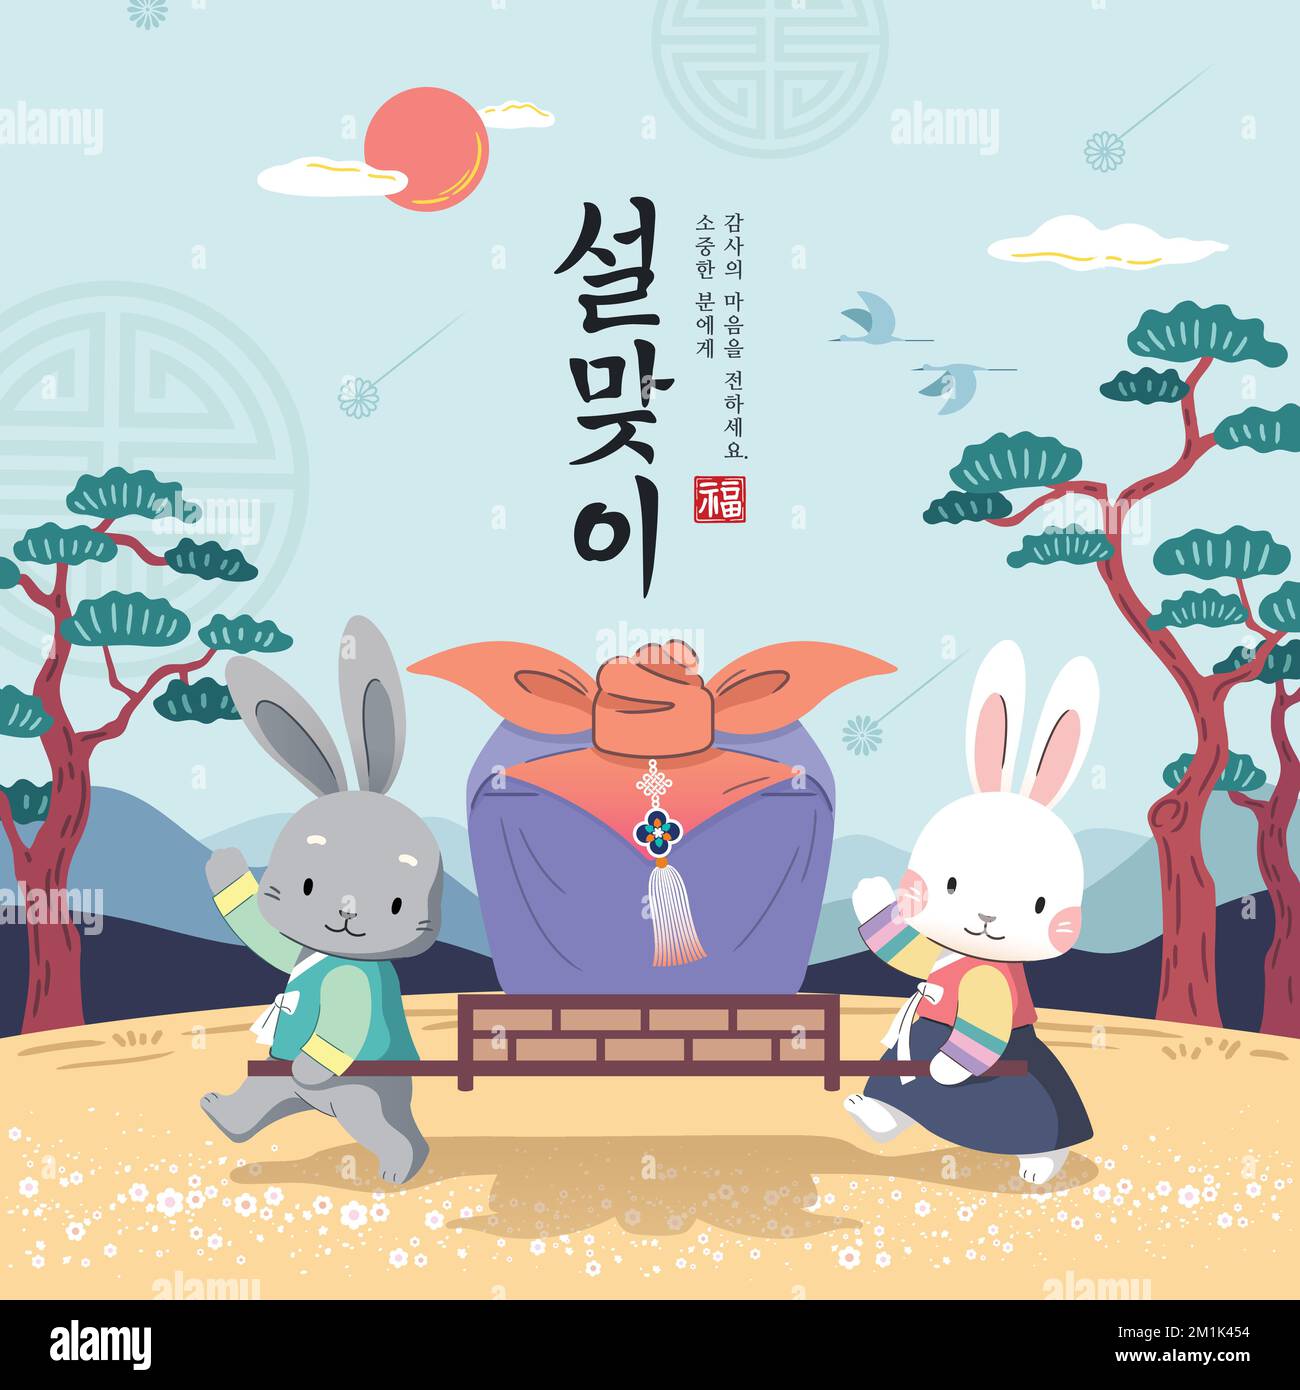 Design der koreanischen Neujahrsveranstaltung. Zur Feier des Jahres des Hasen tragen die in hanbok gekleideten Kaninchen traditionelle Geschenke. Stock Vektor